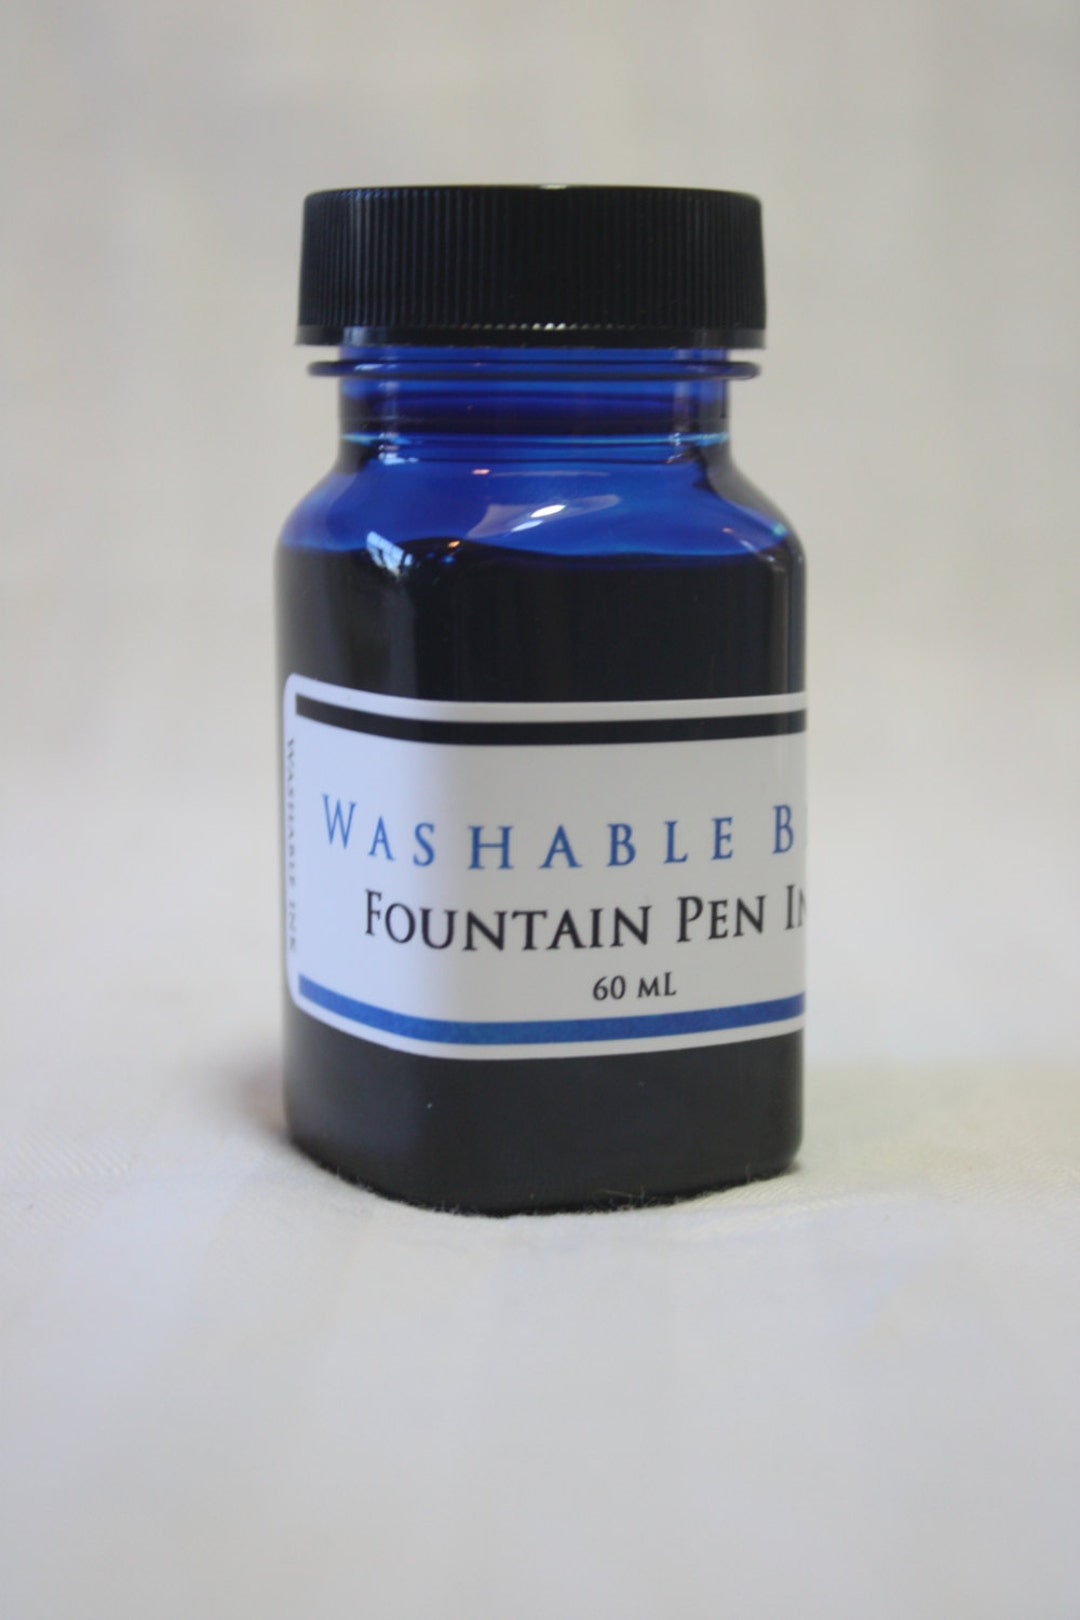 Noodler's Ink Fountain Pen Bottled Ink, 3-ounces, 20 Color Options 